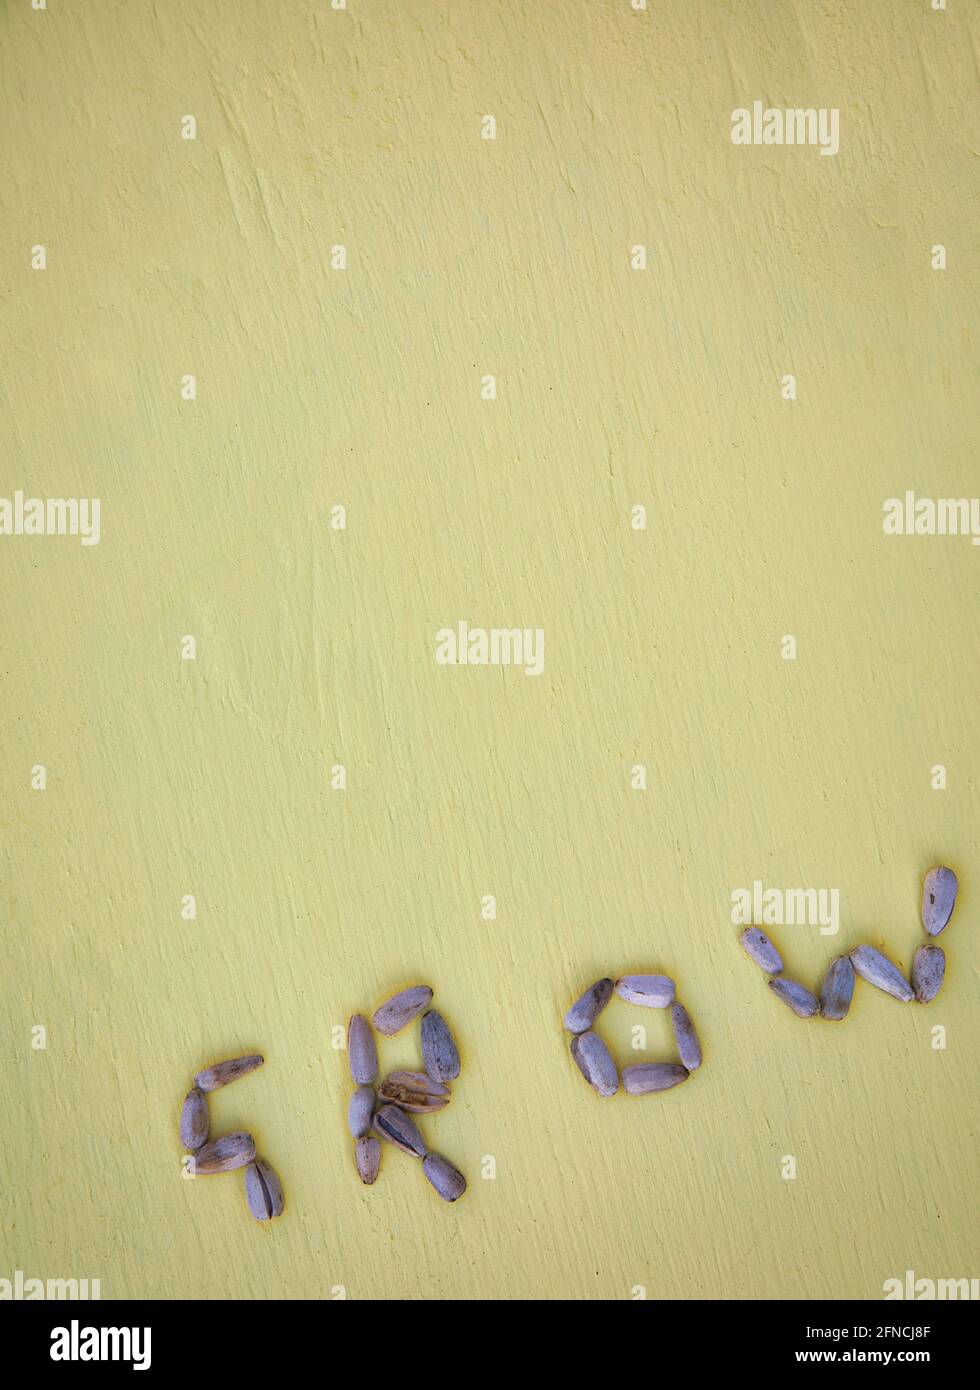 Mot pousser à partir de graines de tournesol (Helianthus) sur fond jaune texturé. Concept de croissance, de débuts, de nature, Banque D'Images